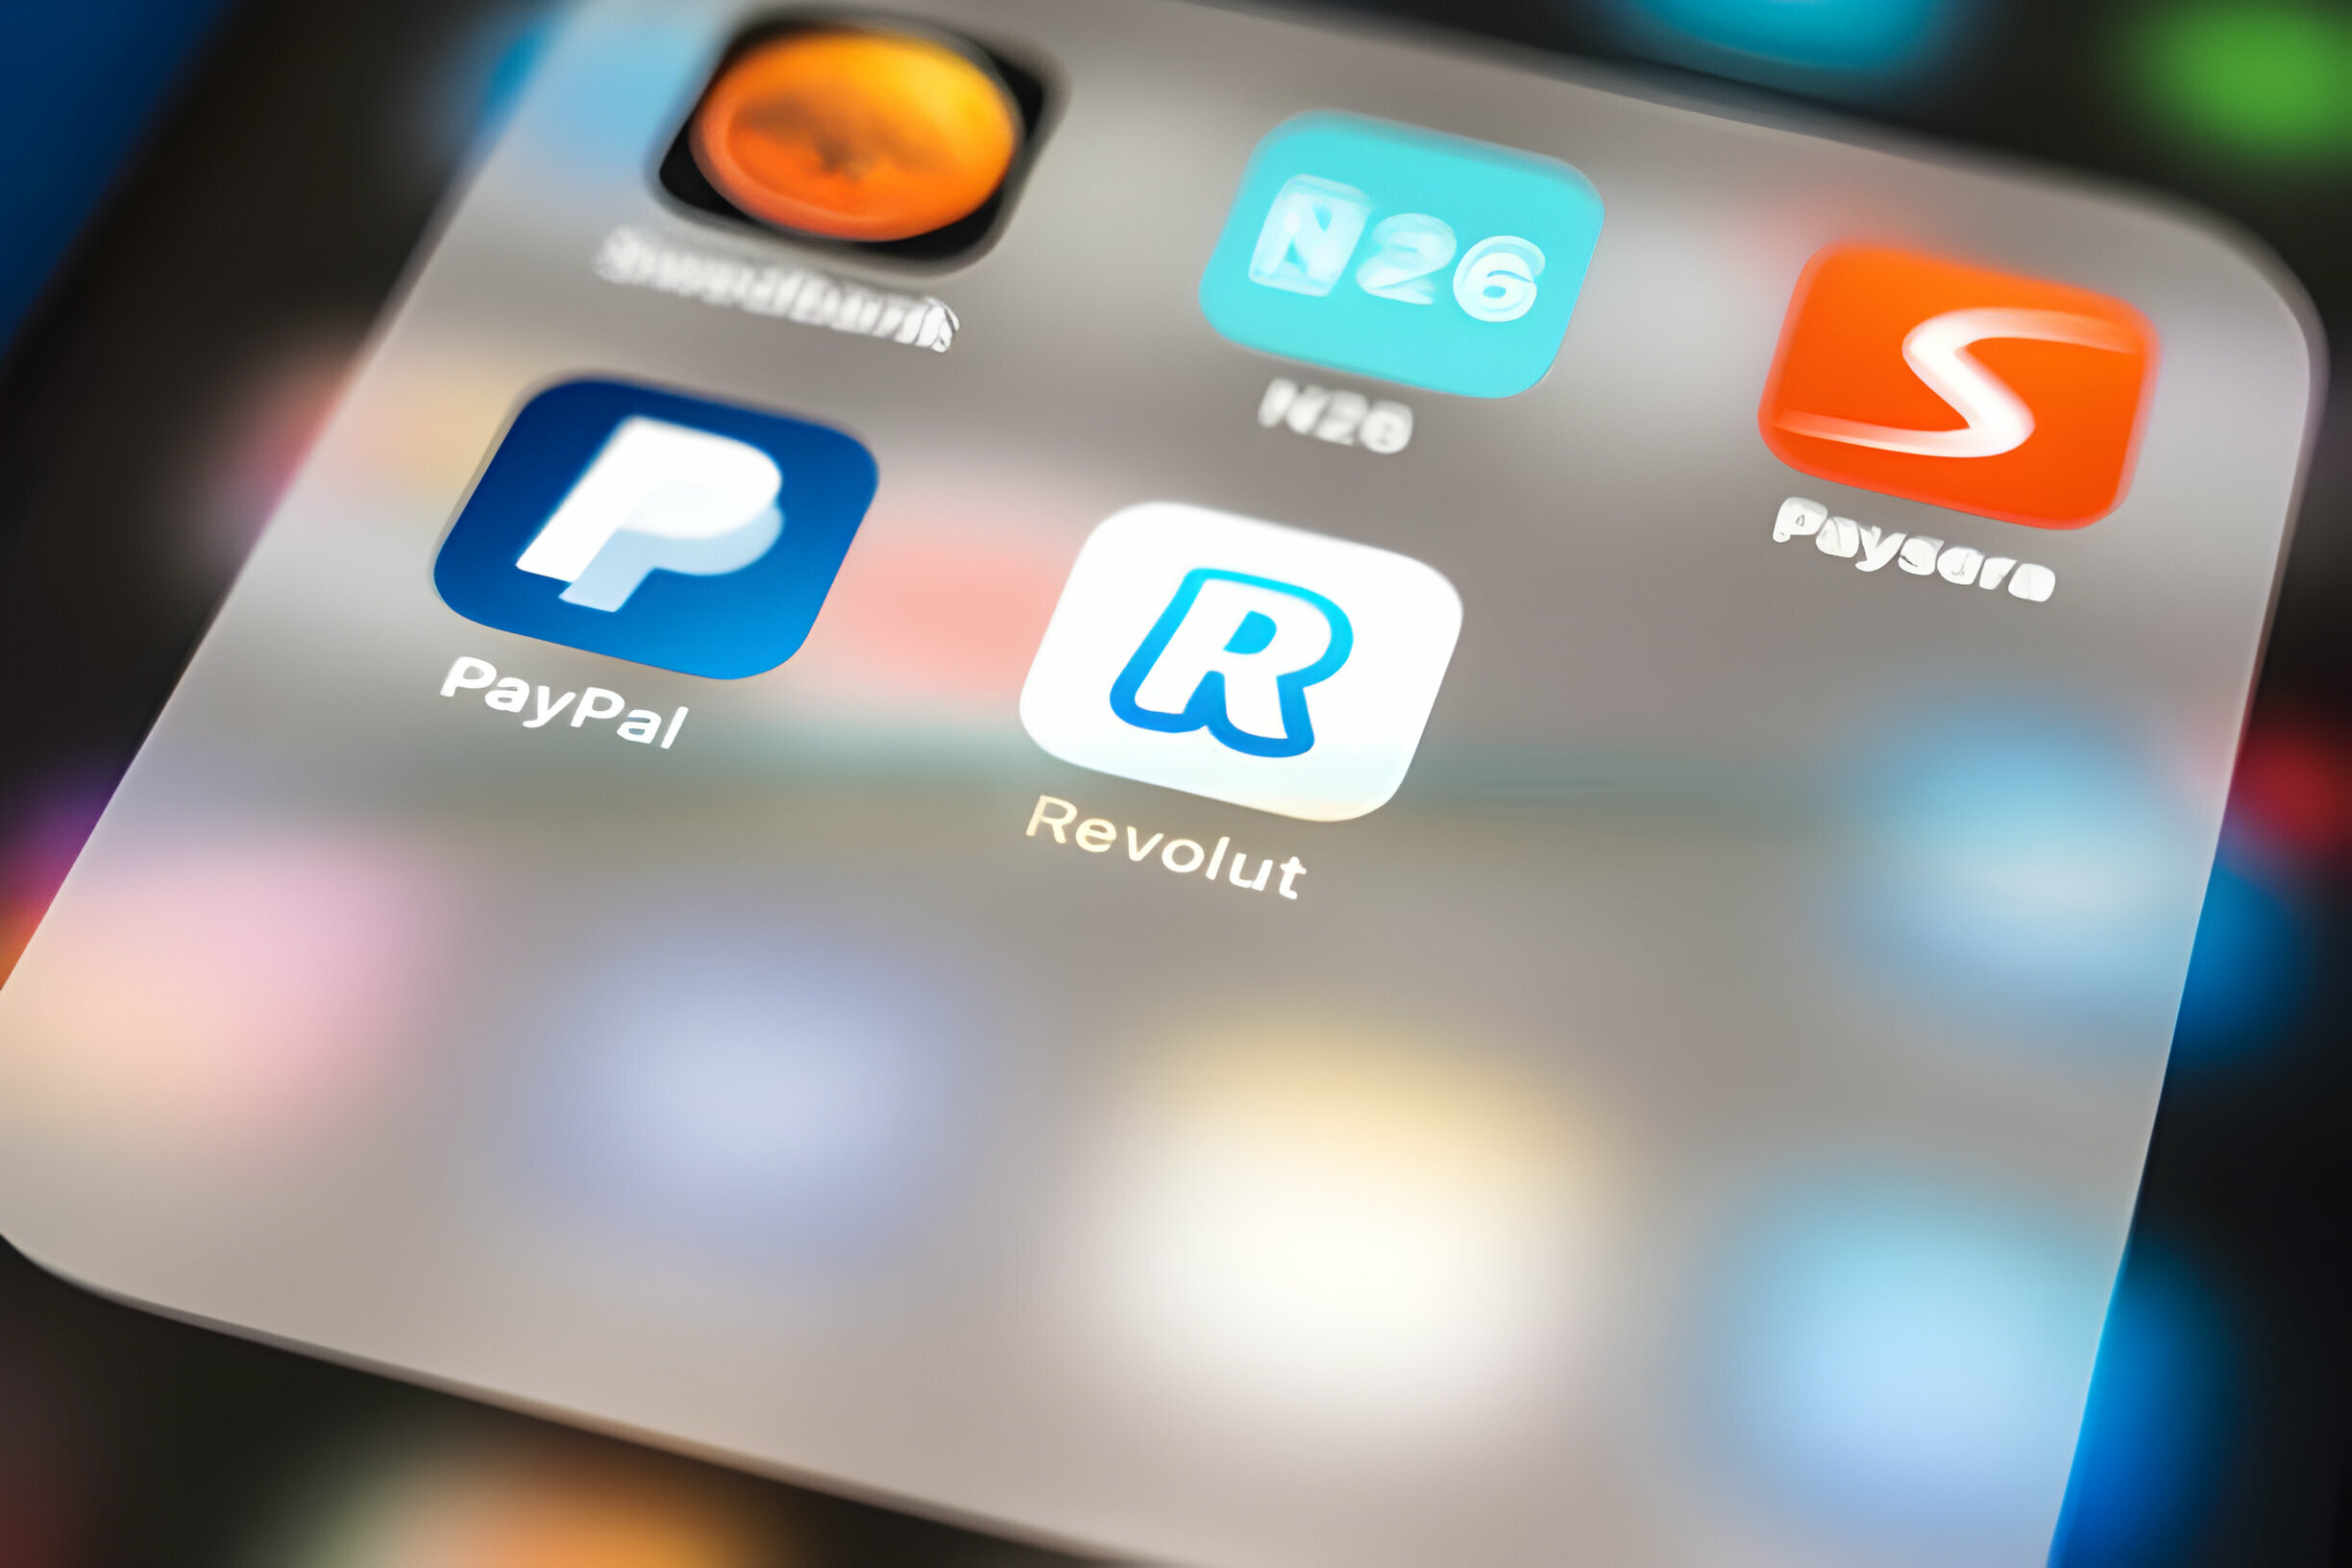 Icônes des applications de services financiers PayPal, Revolut, N26 et Paysera sur un écran mobile.